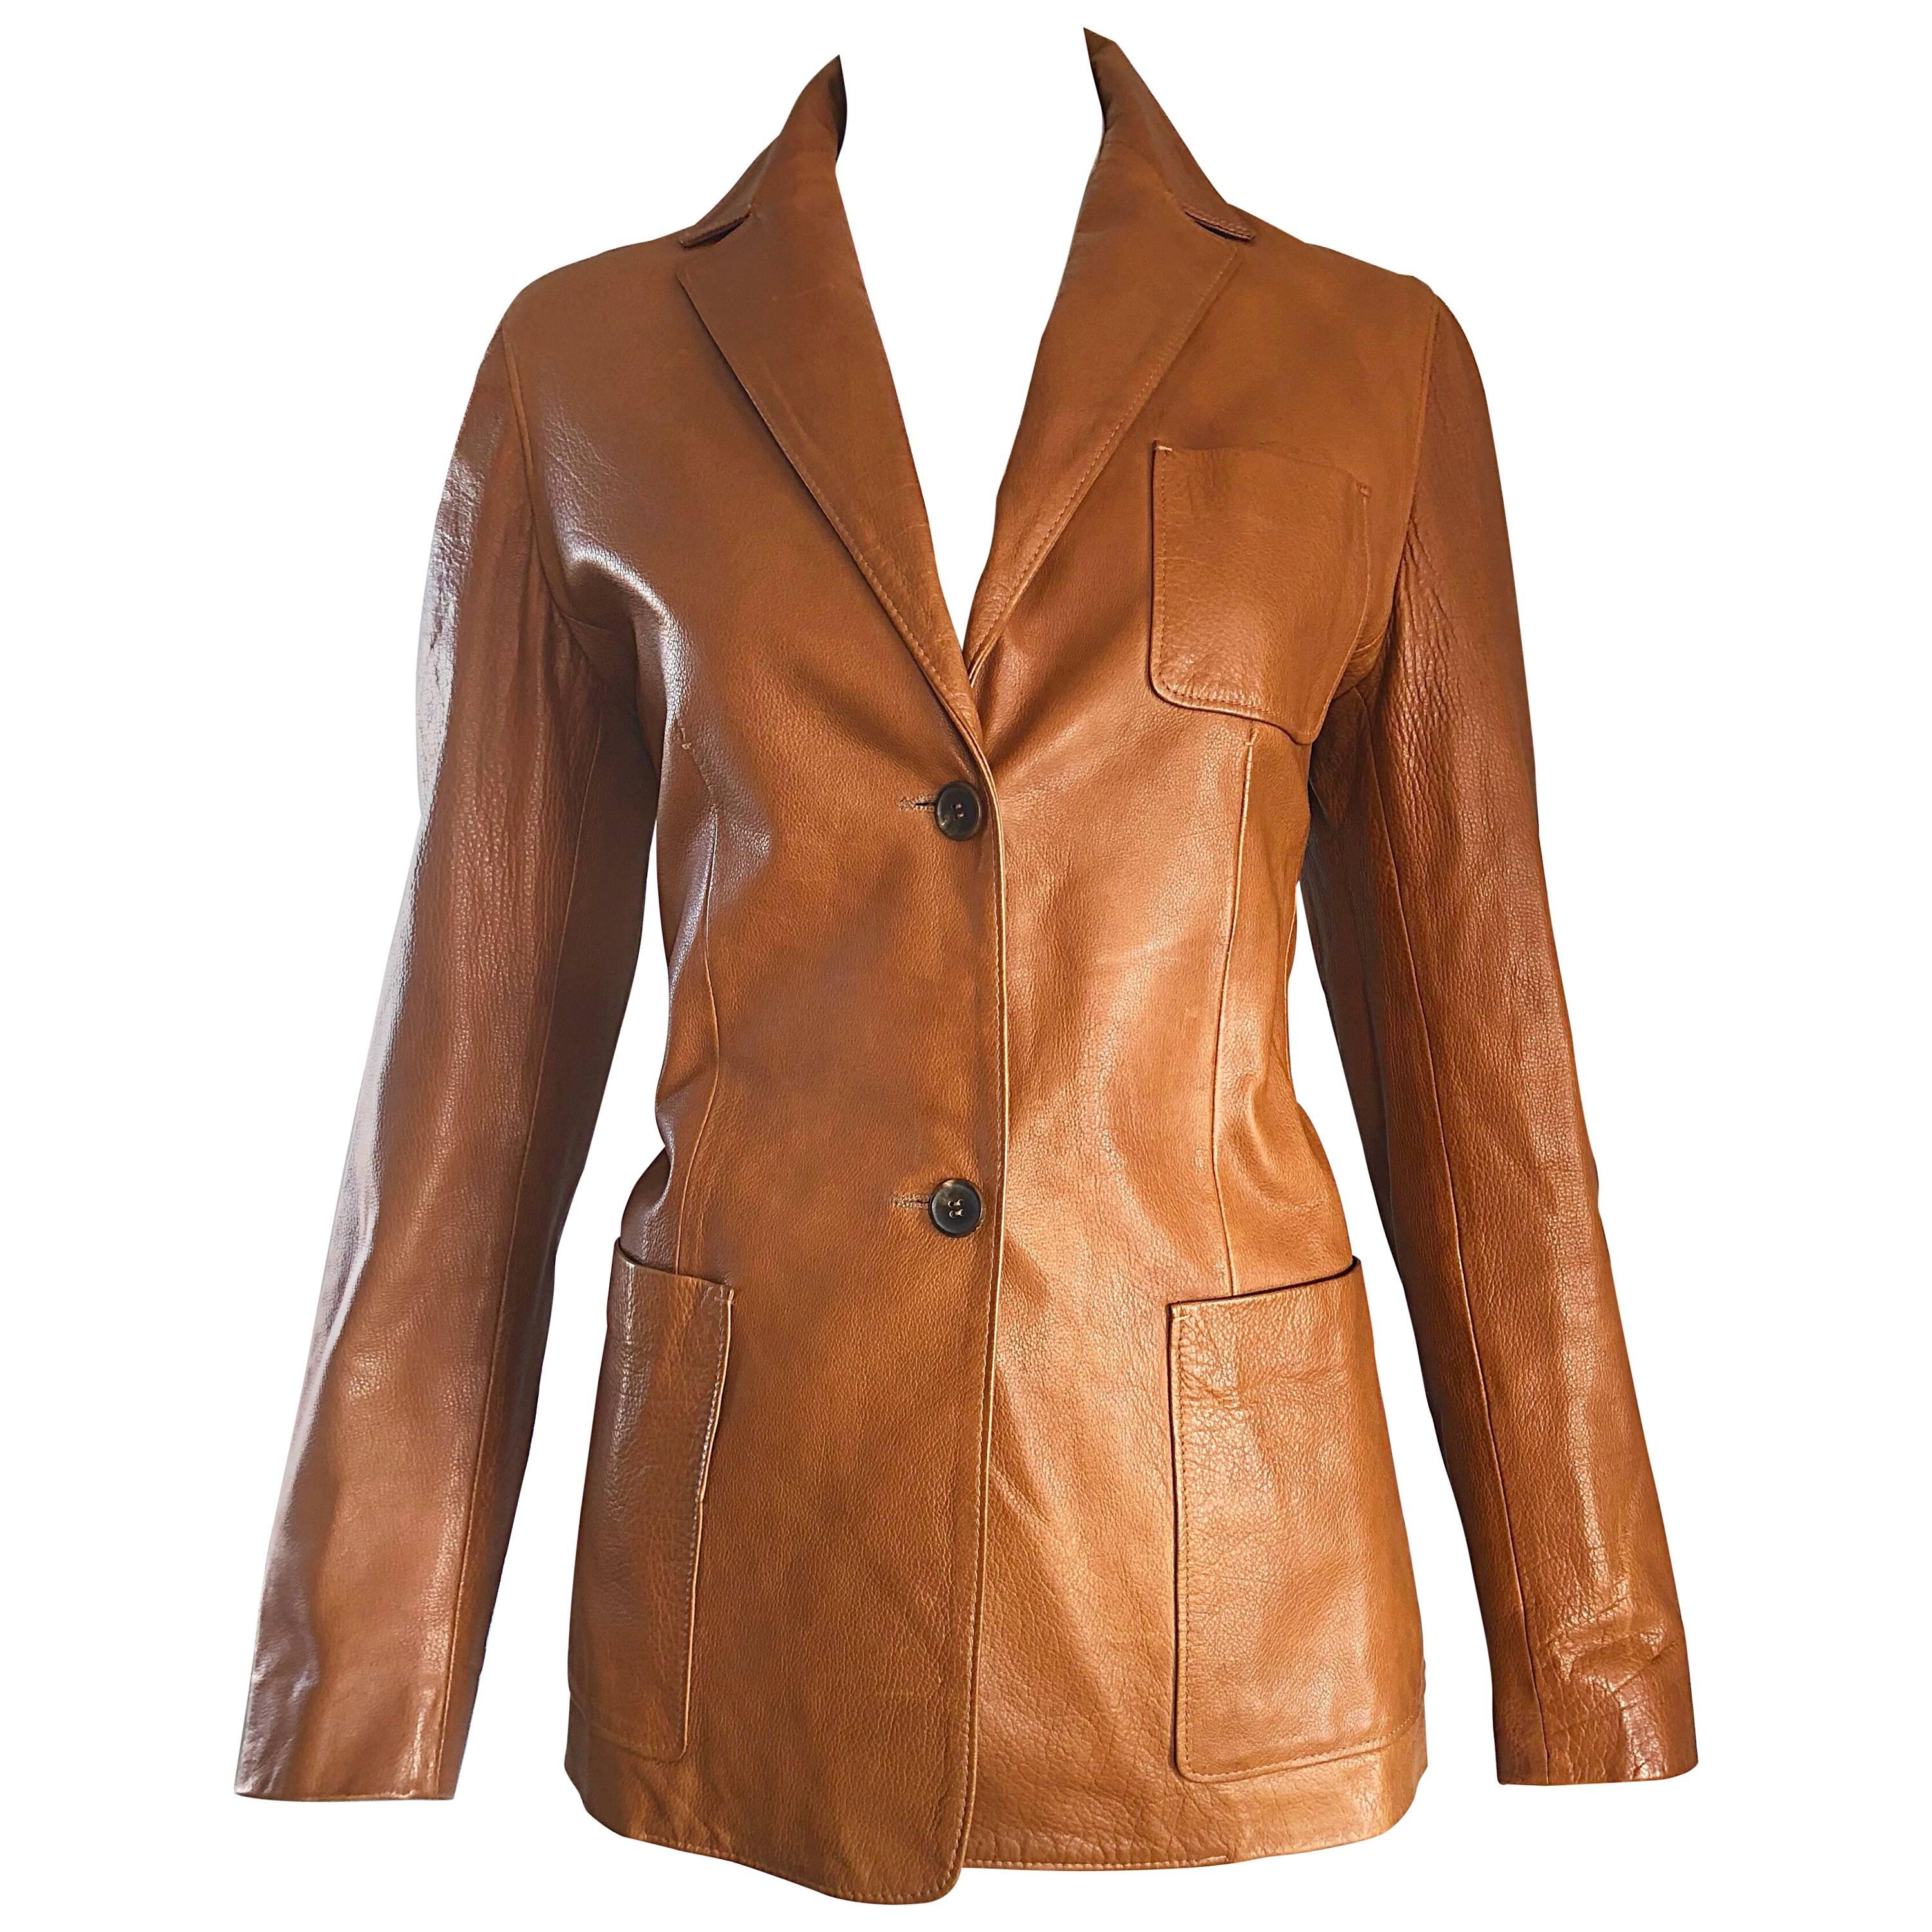 Jil Sander Camel Tan Brown Leather Size 38 Vintage Fitted Blazer Jacket, 1990s